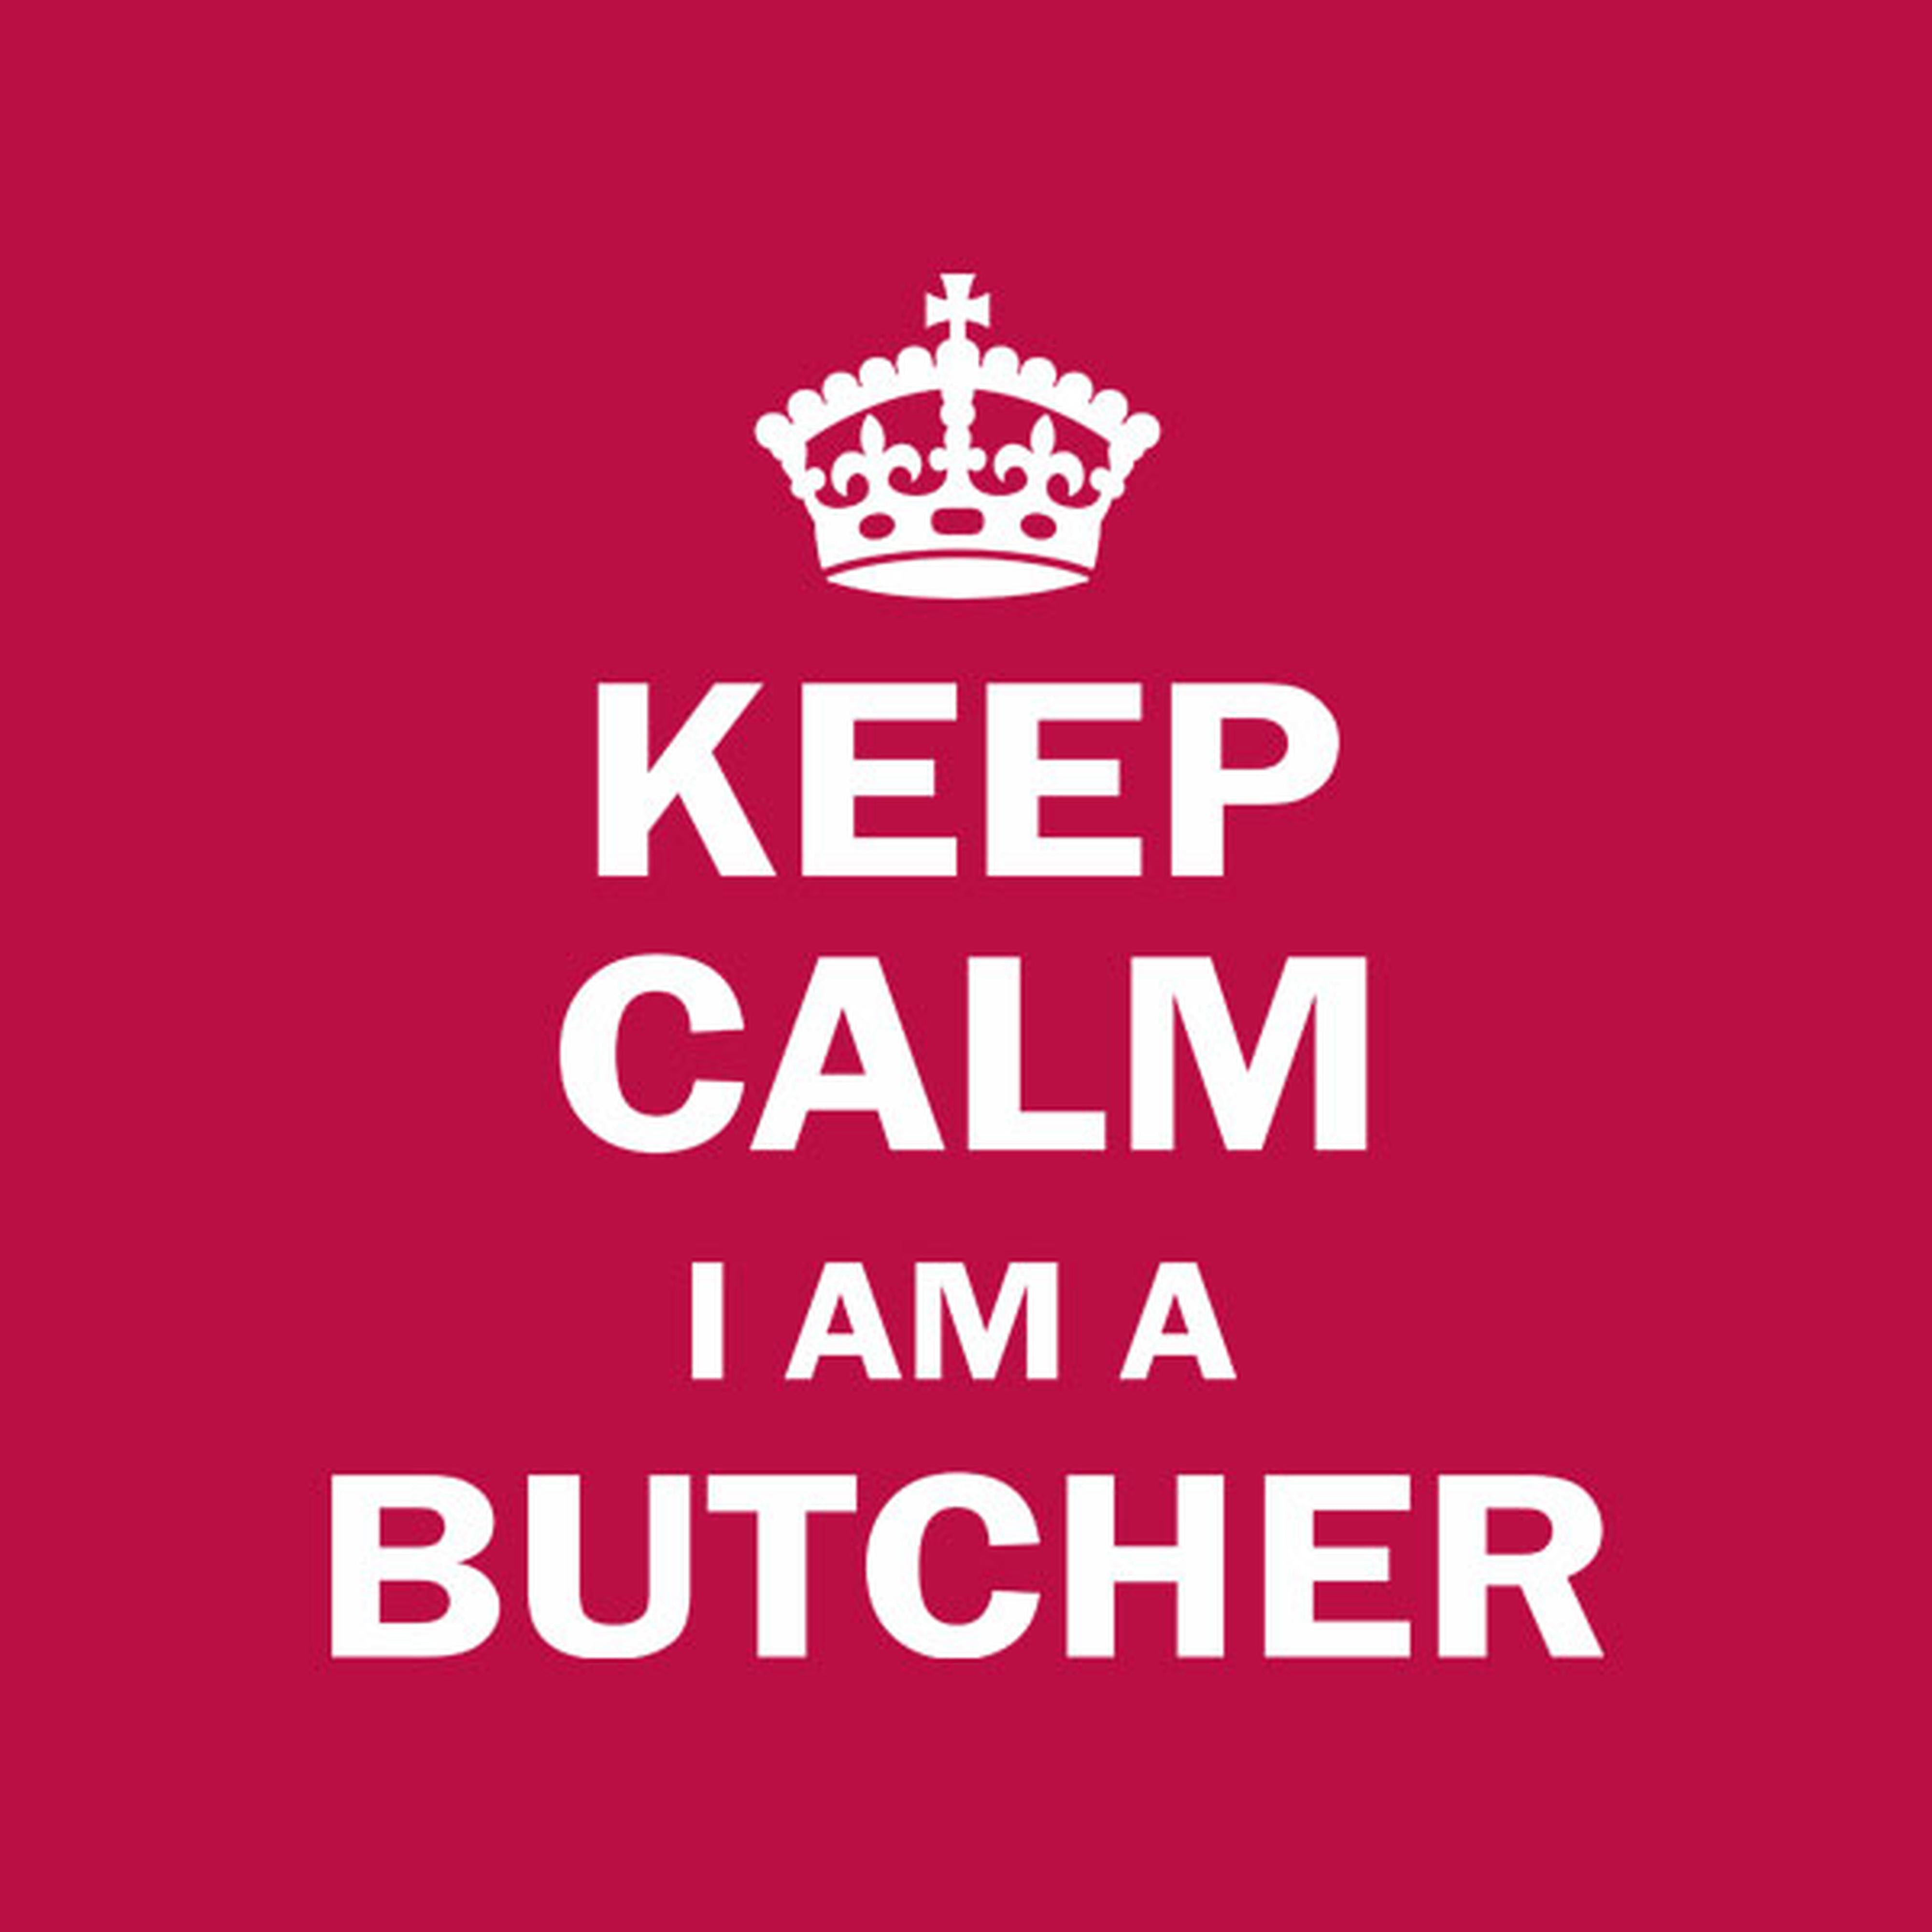 Keep calm. I am a butcher - T-shirt